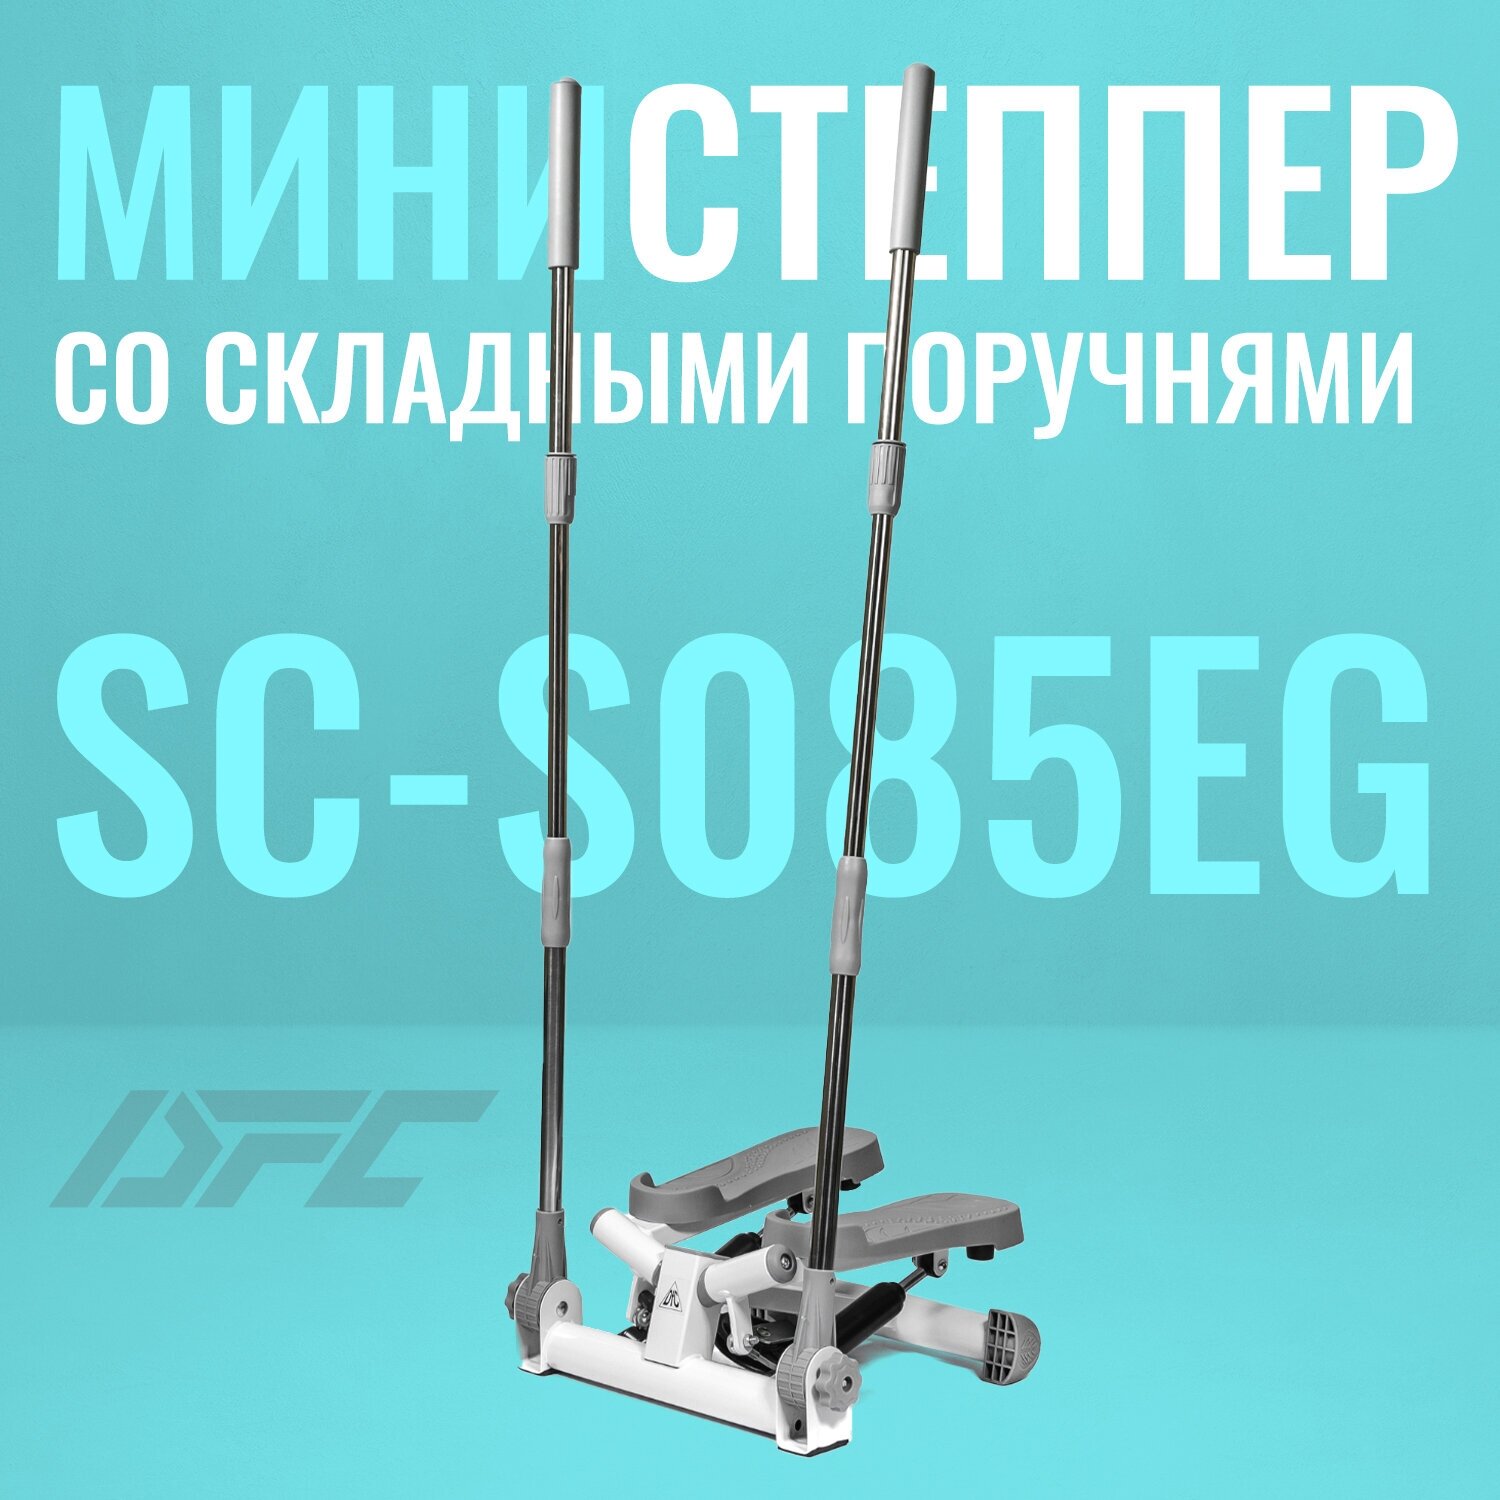 Министеппер со складными поручнями DFC SC-S085EG поворотный